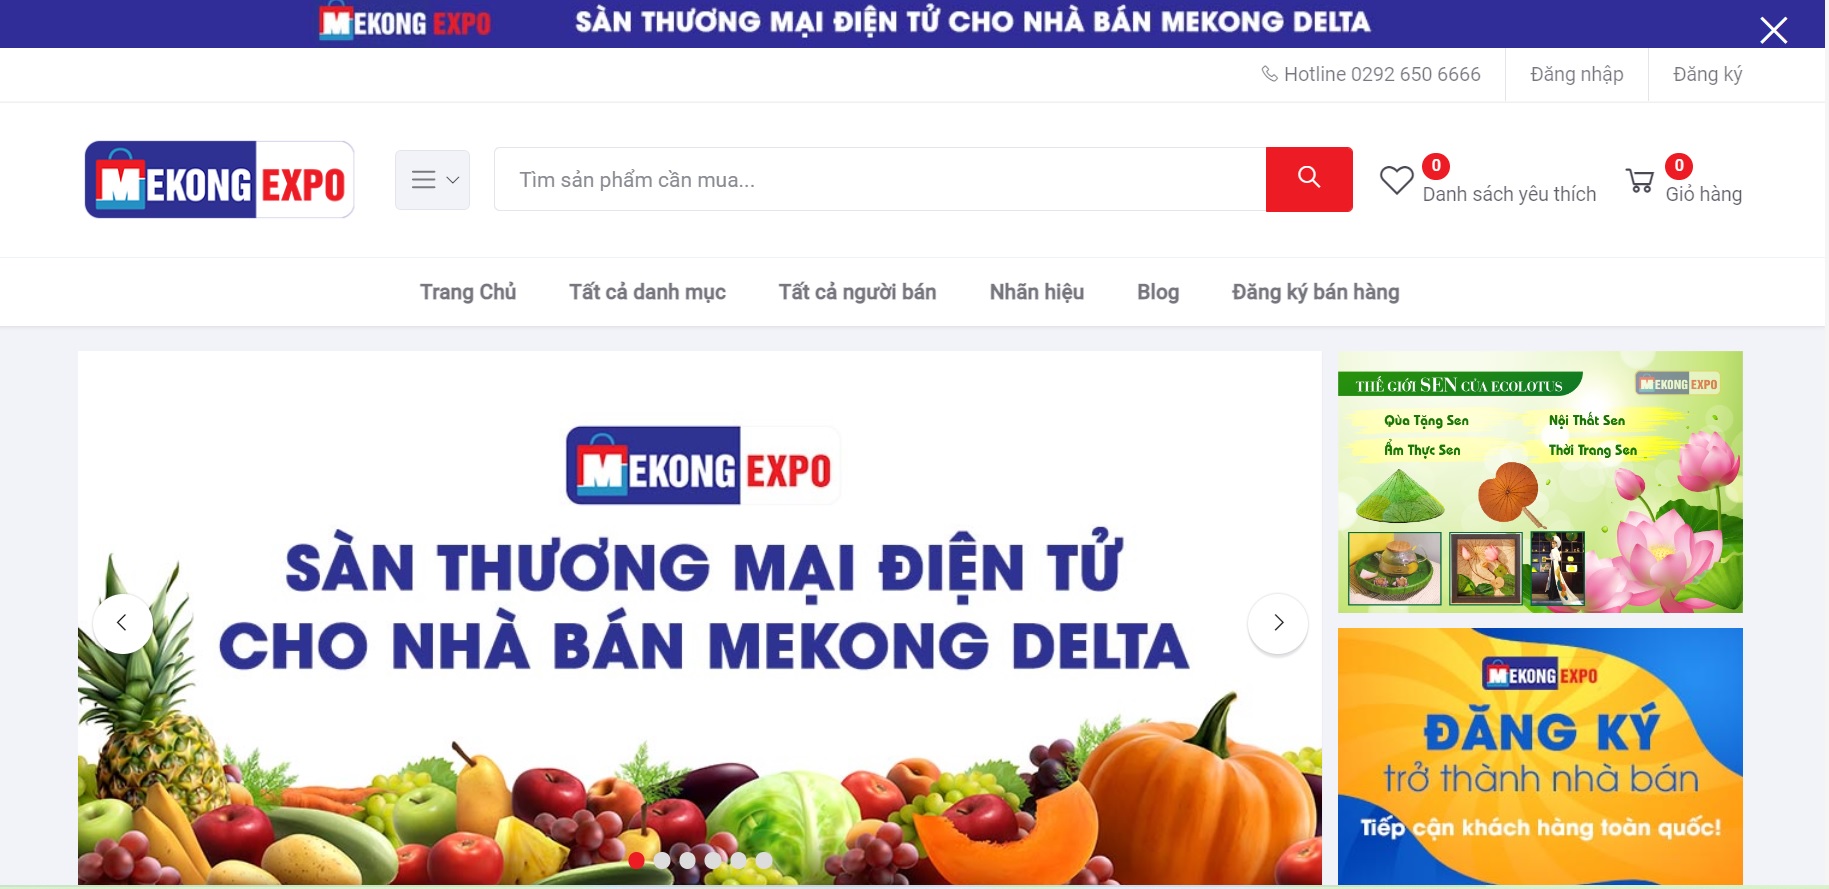 Giao diện chính của Sàn giao diện thương mại điện tử Mekongexpo.vn bắt mắt, thân thiện, dễ sử dụng với khách hàng.